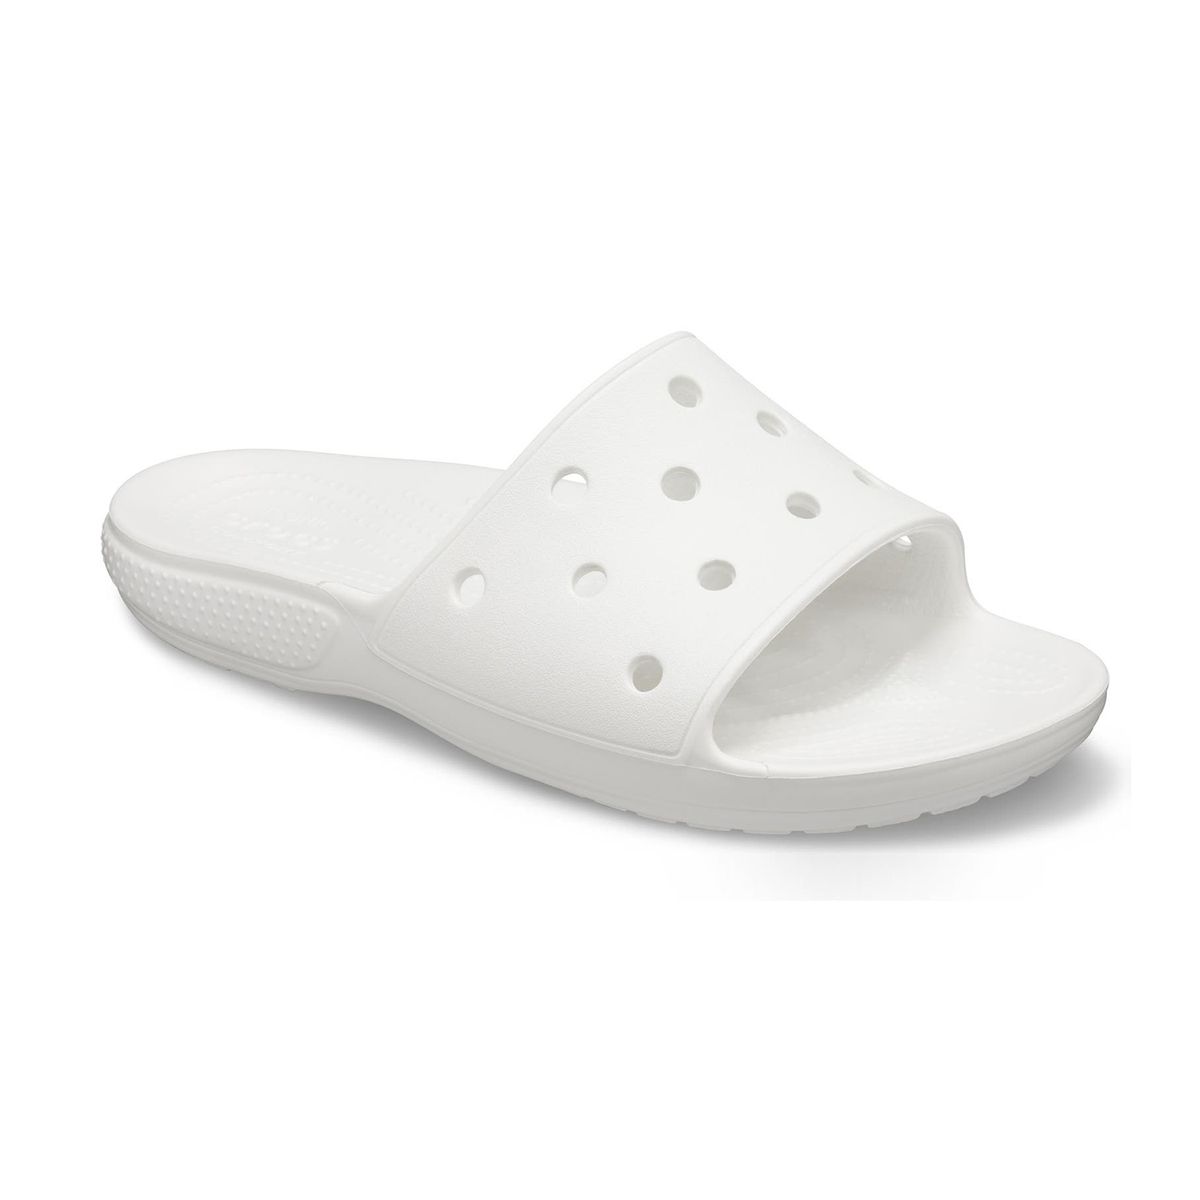 Crocs Classic Slide Sandal in White